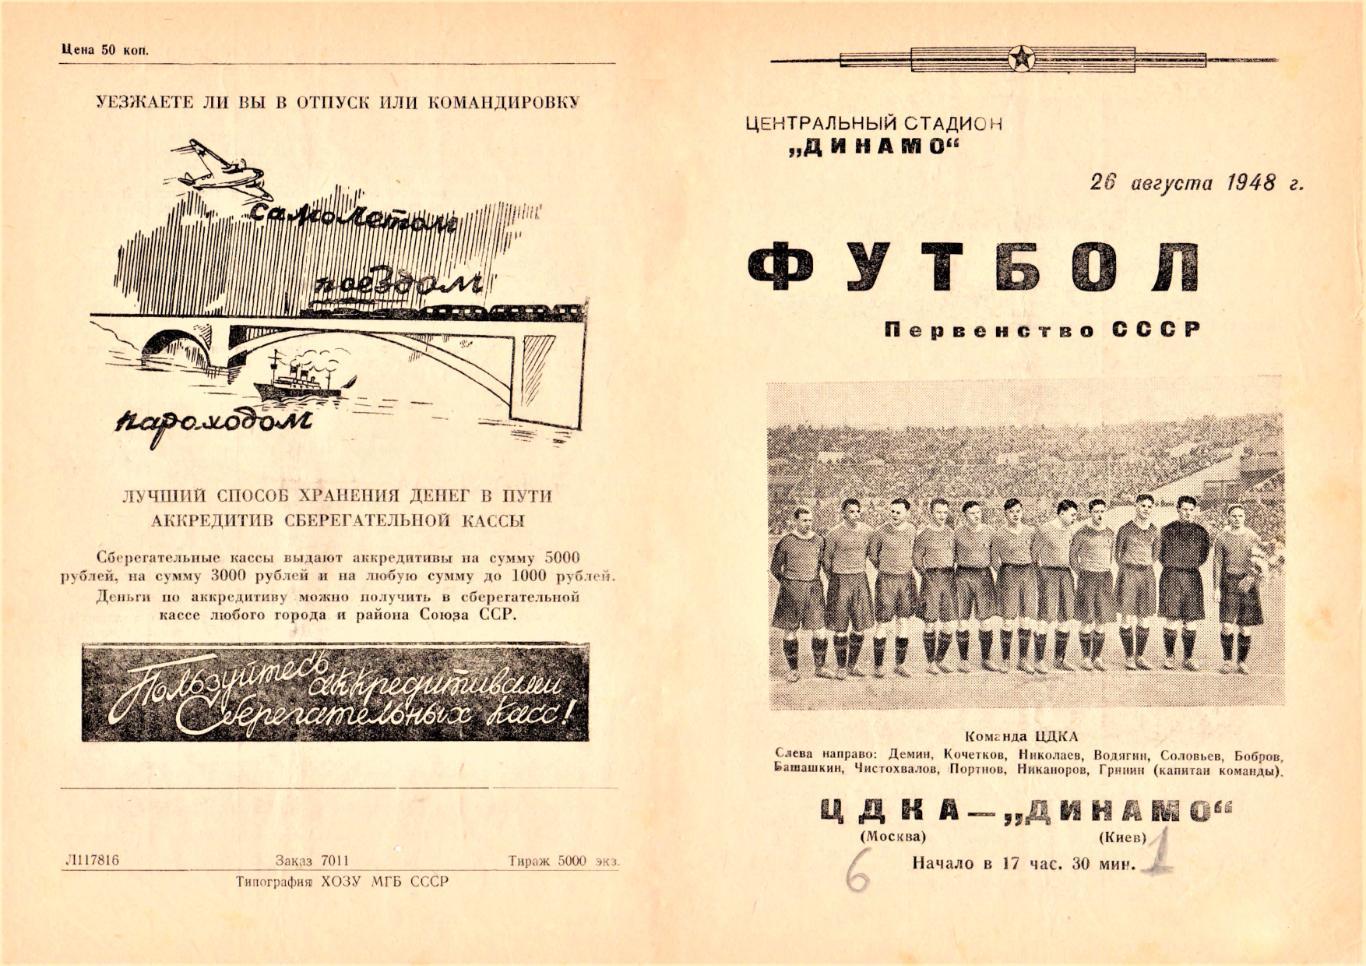 26.08.1948. ЦДКА (Москва) - Динамо (Киев) - копия